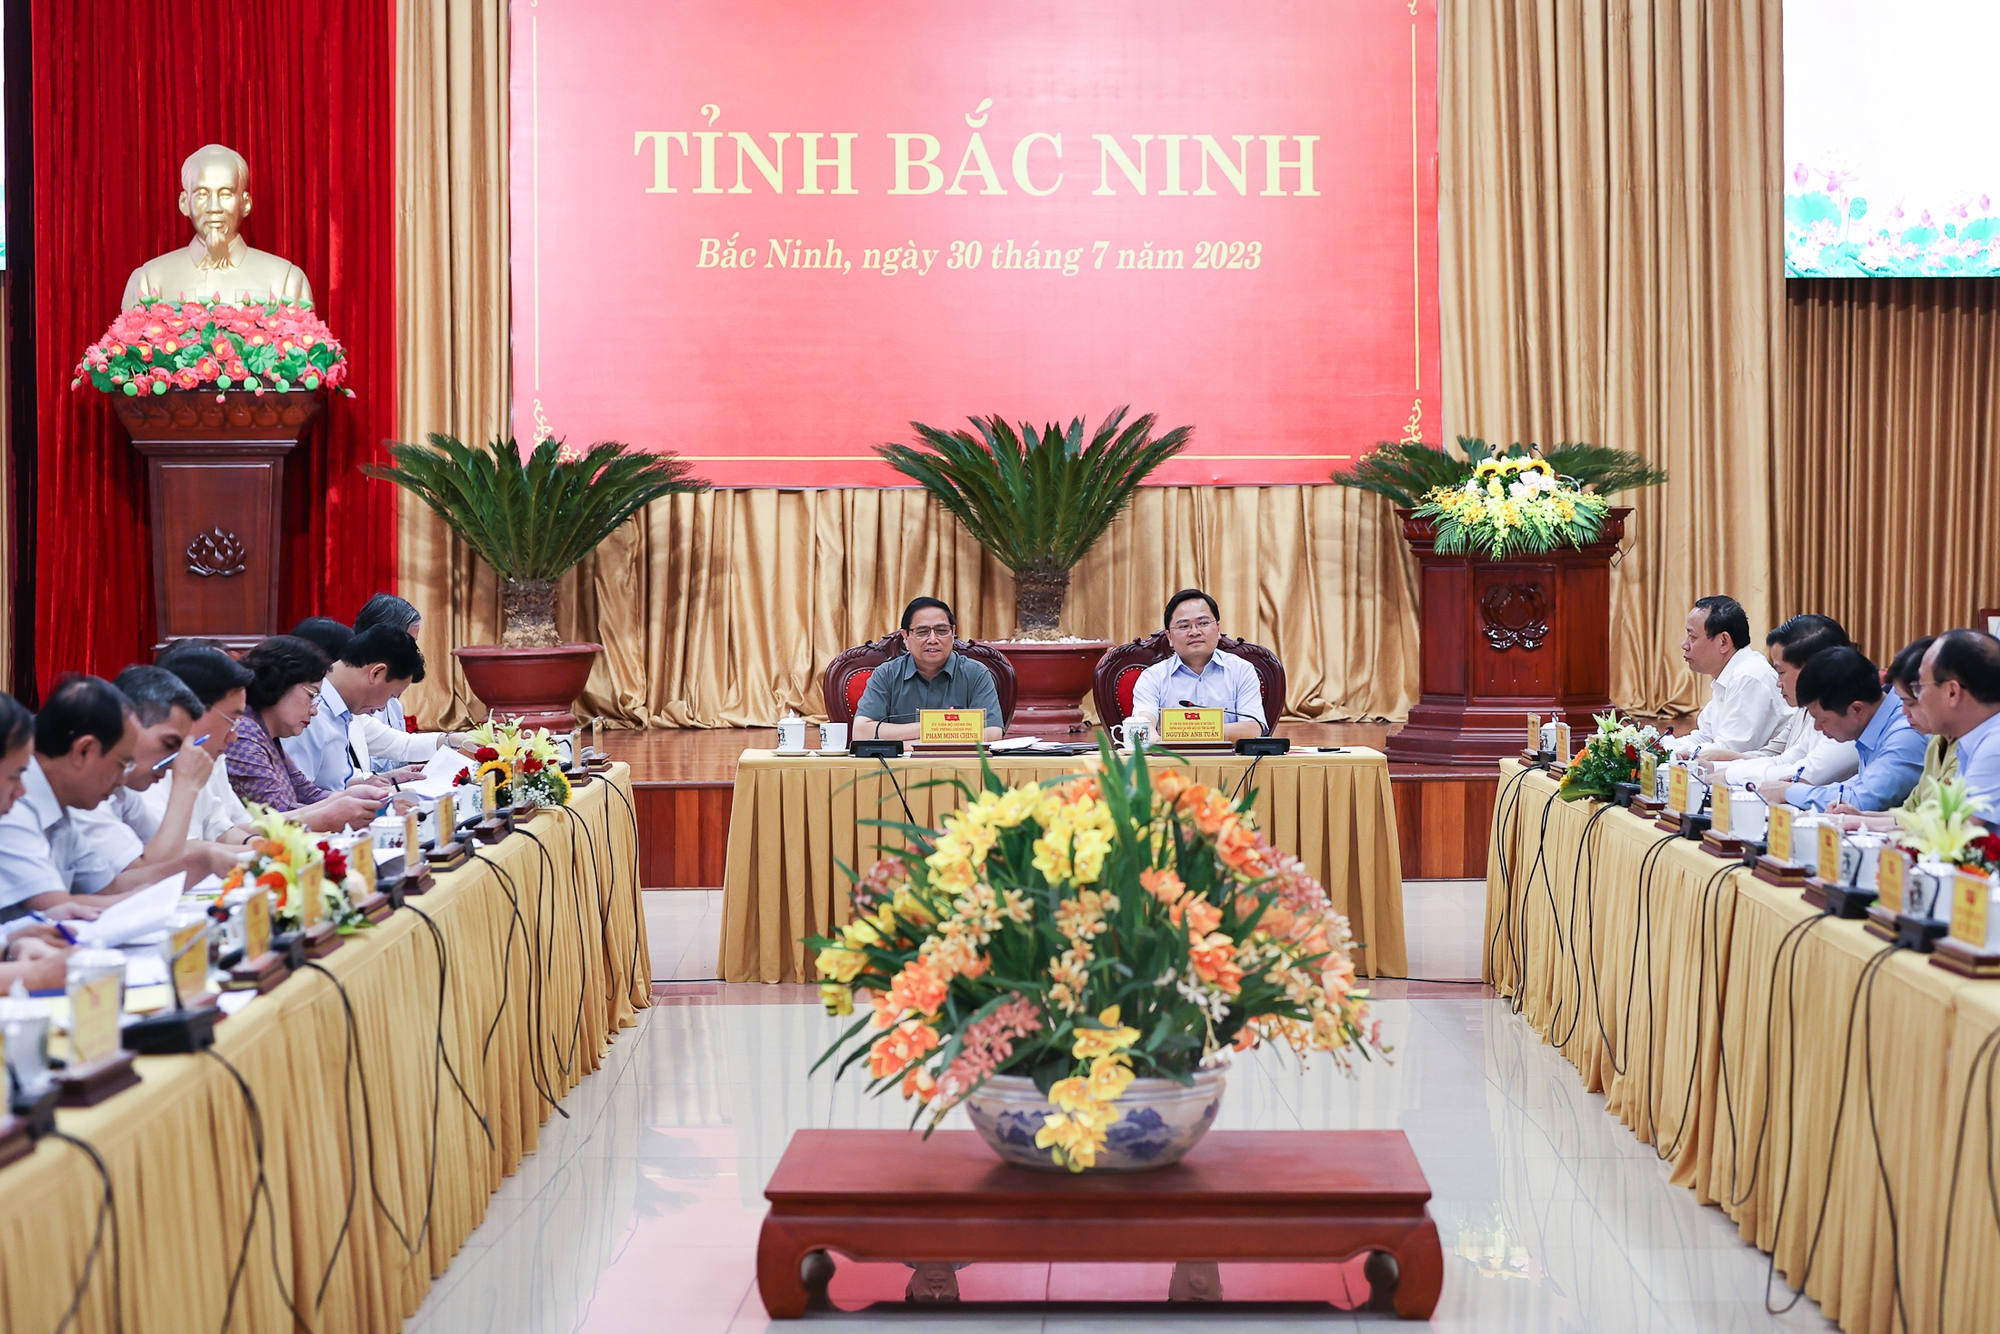 Thủ tướng Phạm Minh Chính làm việc với Tỉnh ủy Bắc Ninh - Ảnh 1.